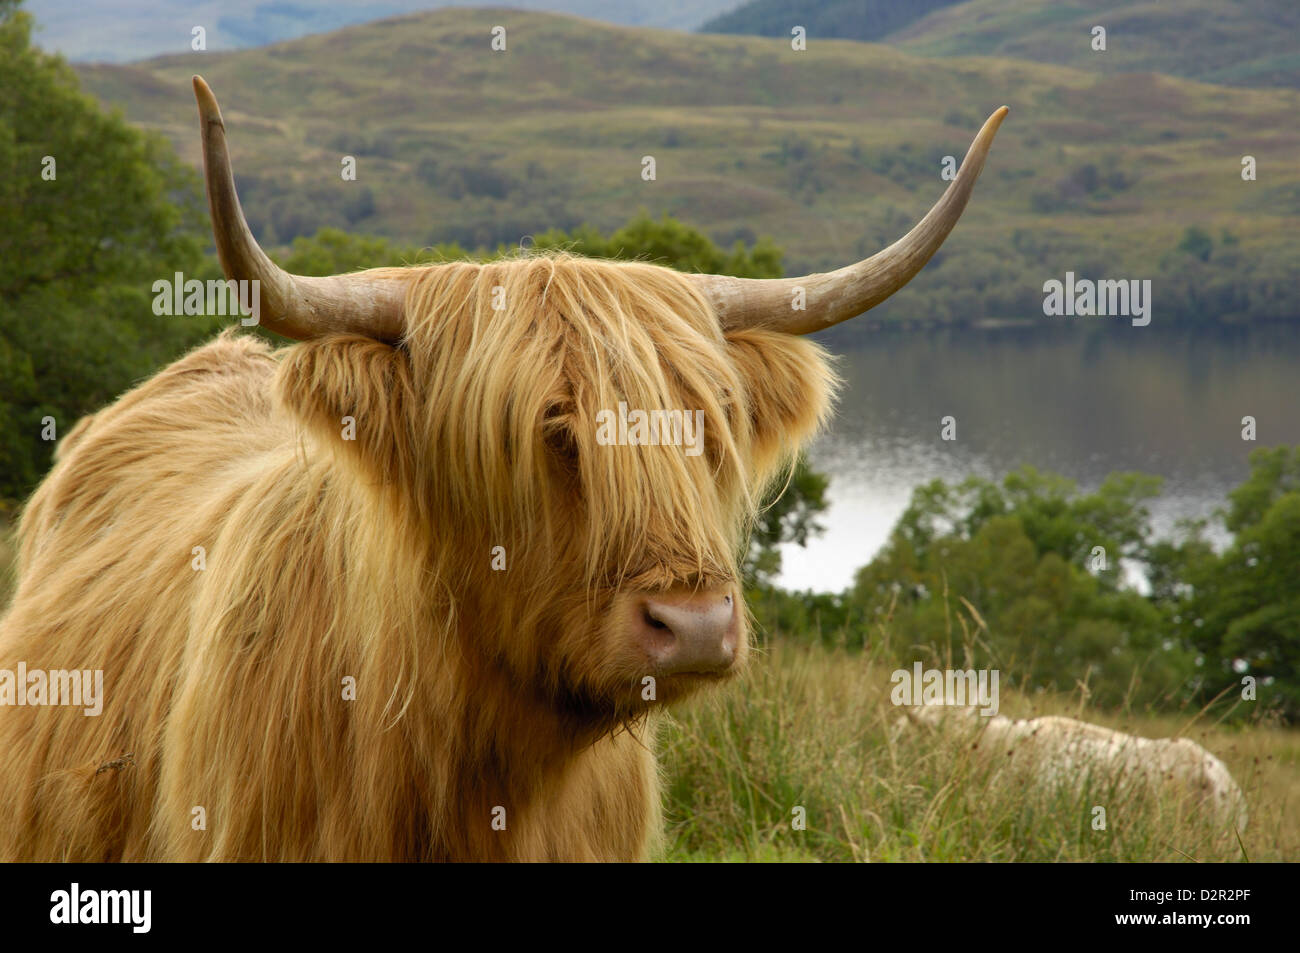 Au-dessus de Highland cattle Loch Katrine, Parc national du Loch Lomond et des Trossachs, Stirling, Ecosse, Royaume-Uni, Europe Banque D'Images